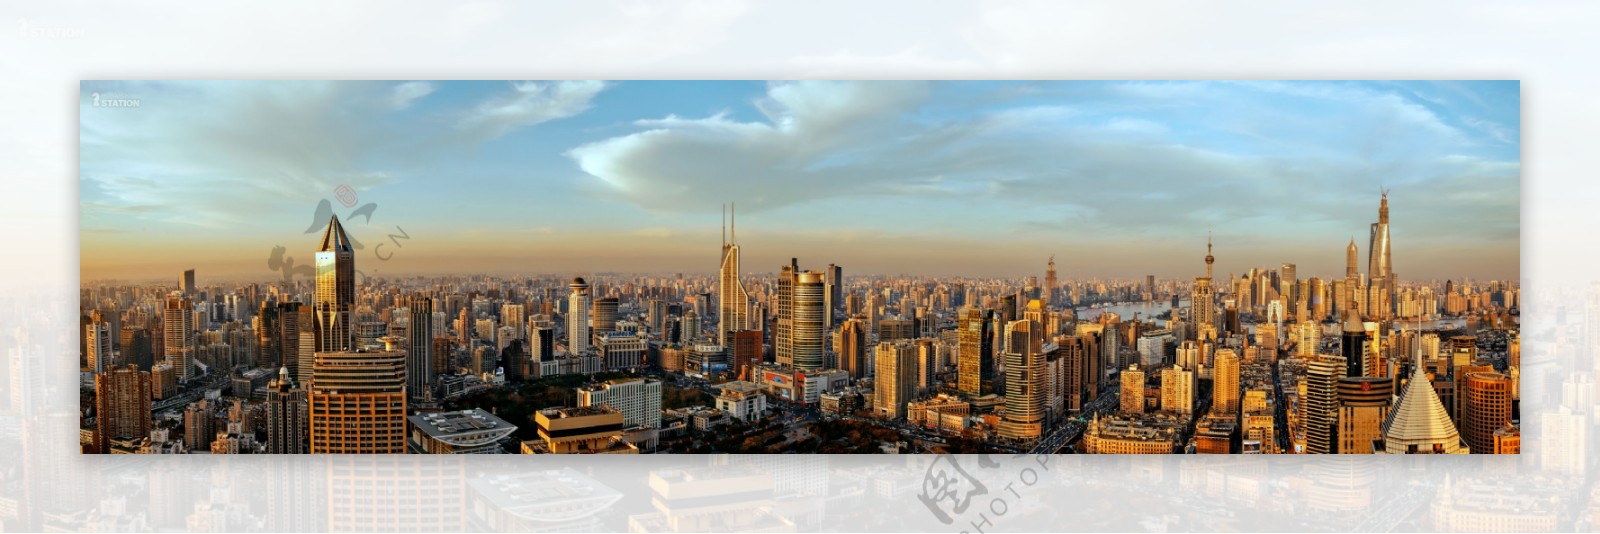 上海全景图城市广角巨图片